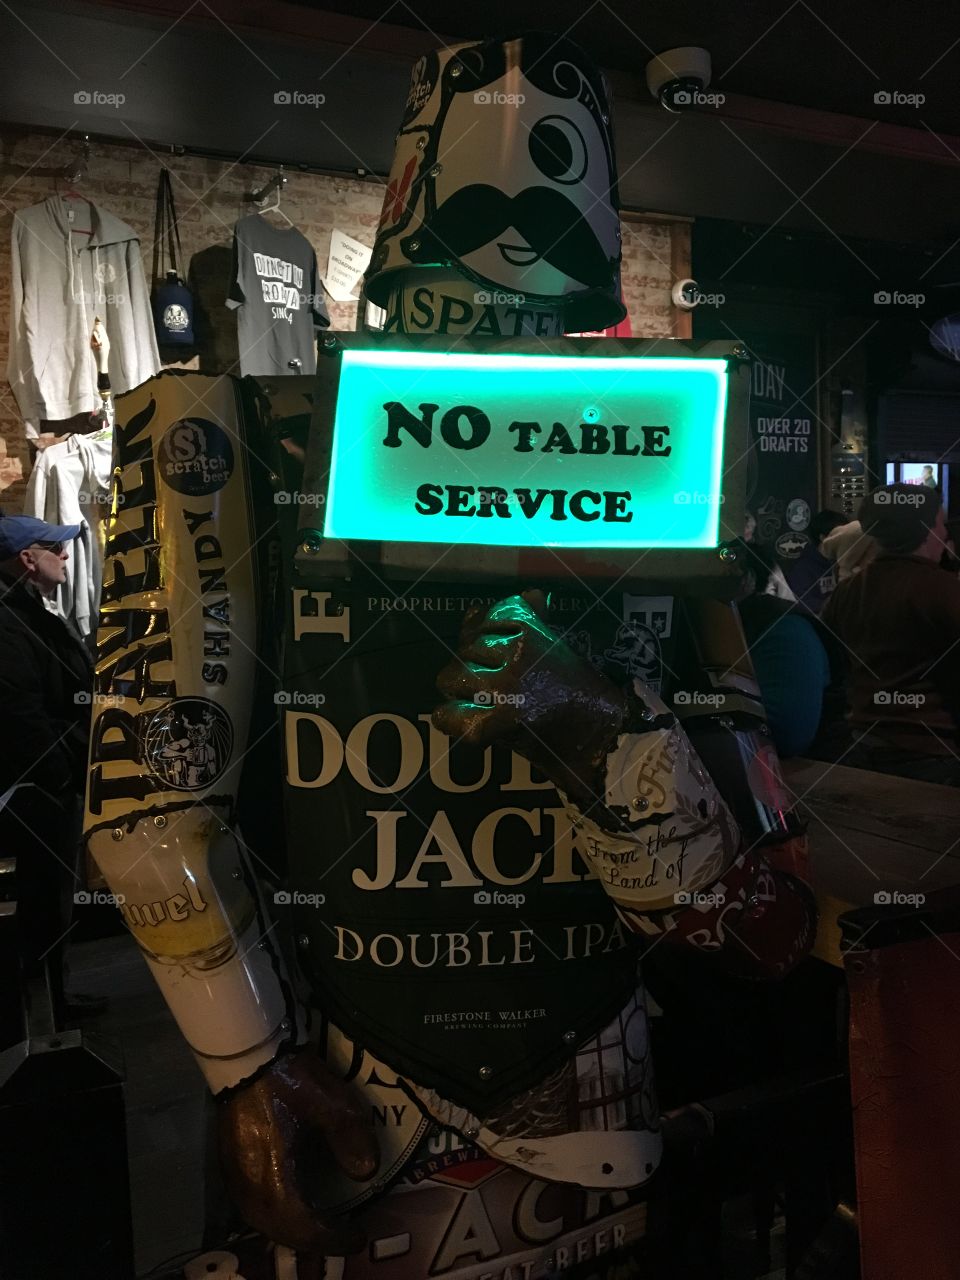  No table service